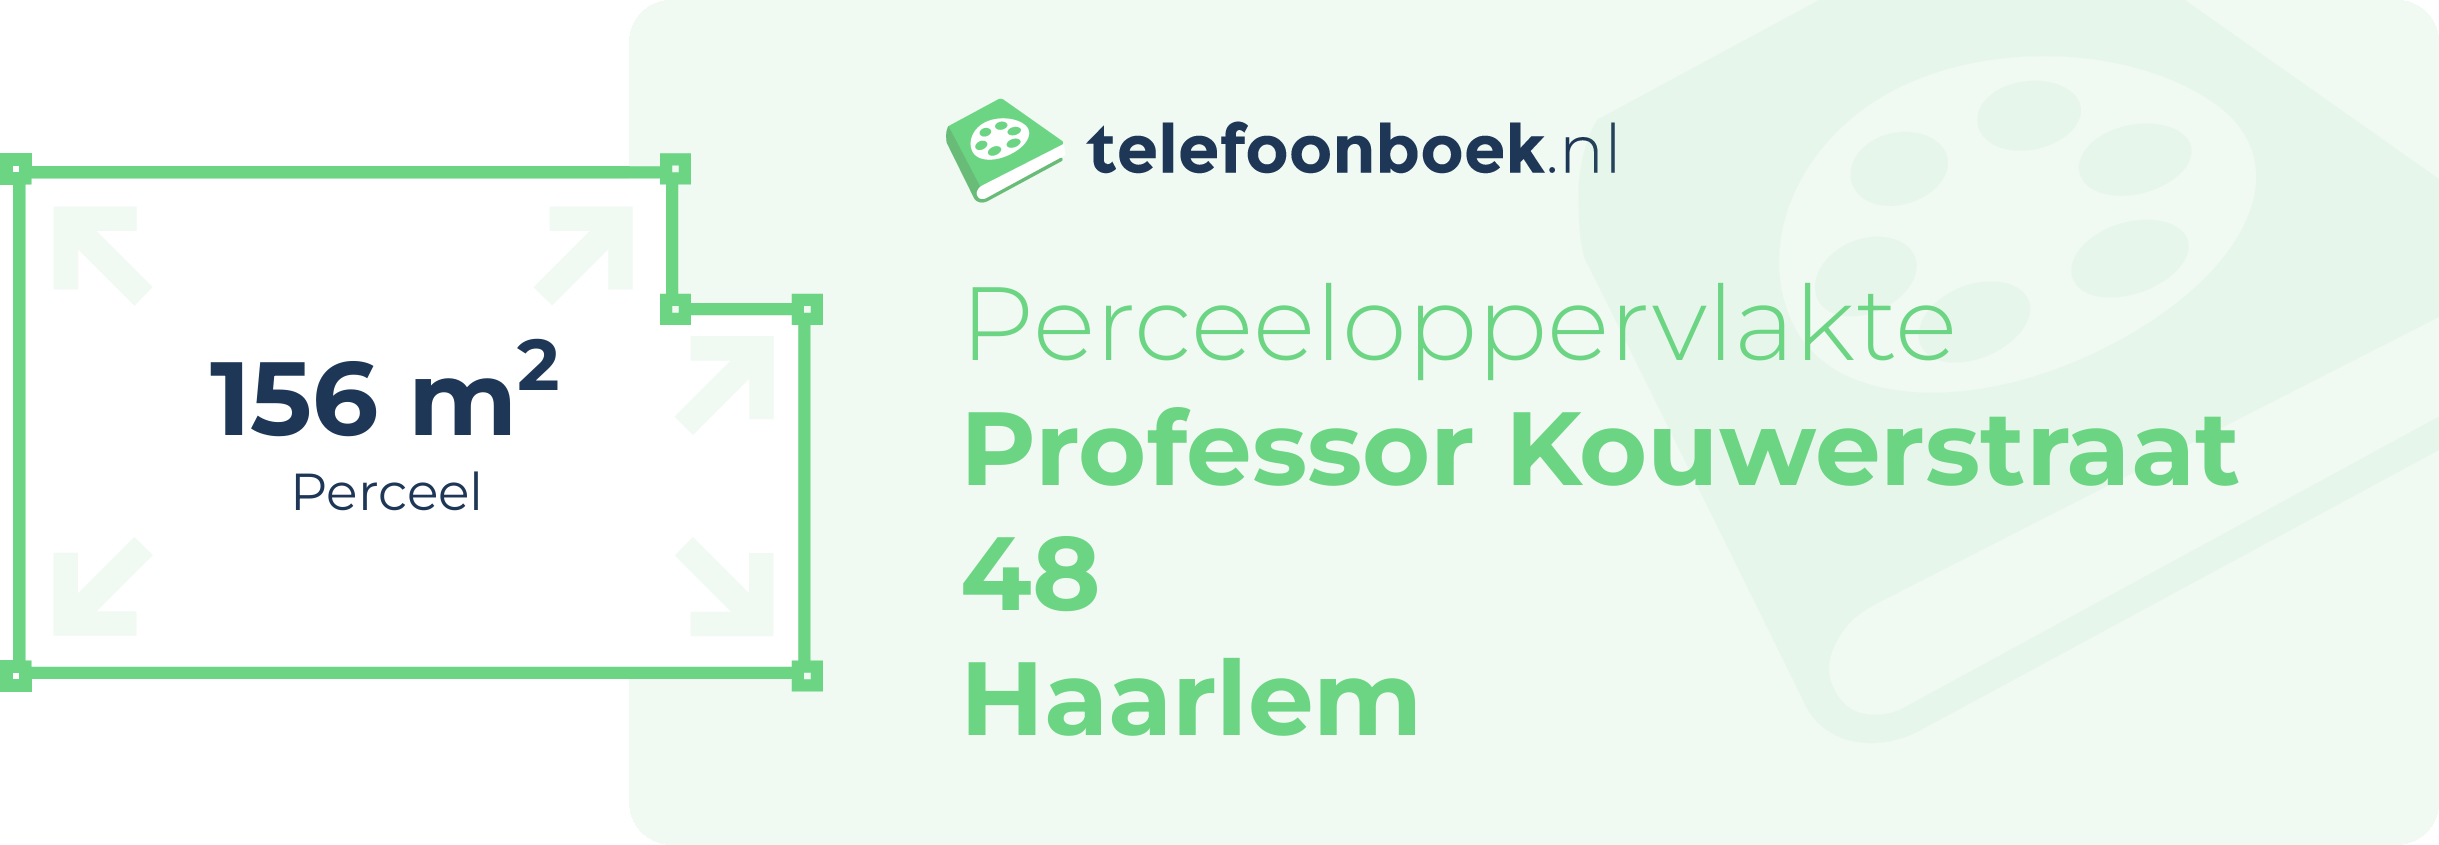 Perceeloppervlakte Professor Kouwerstraat 48 Haarlem